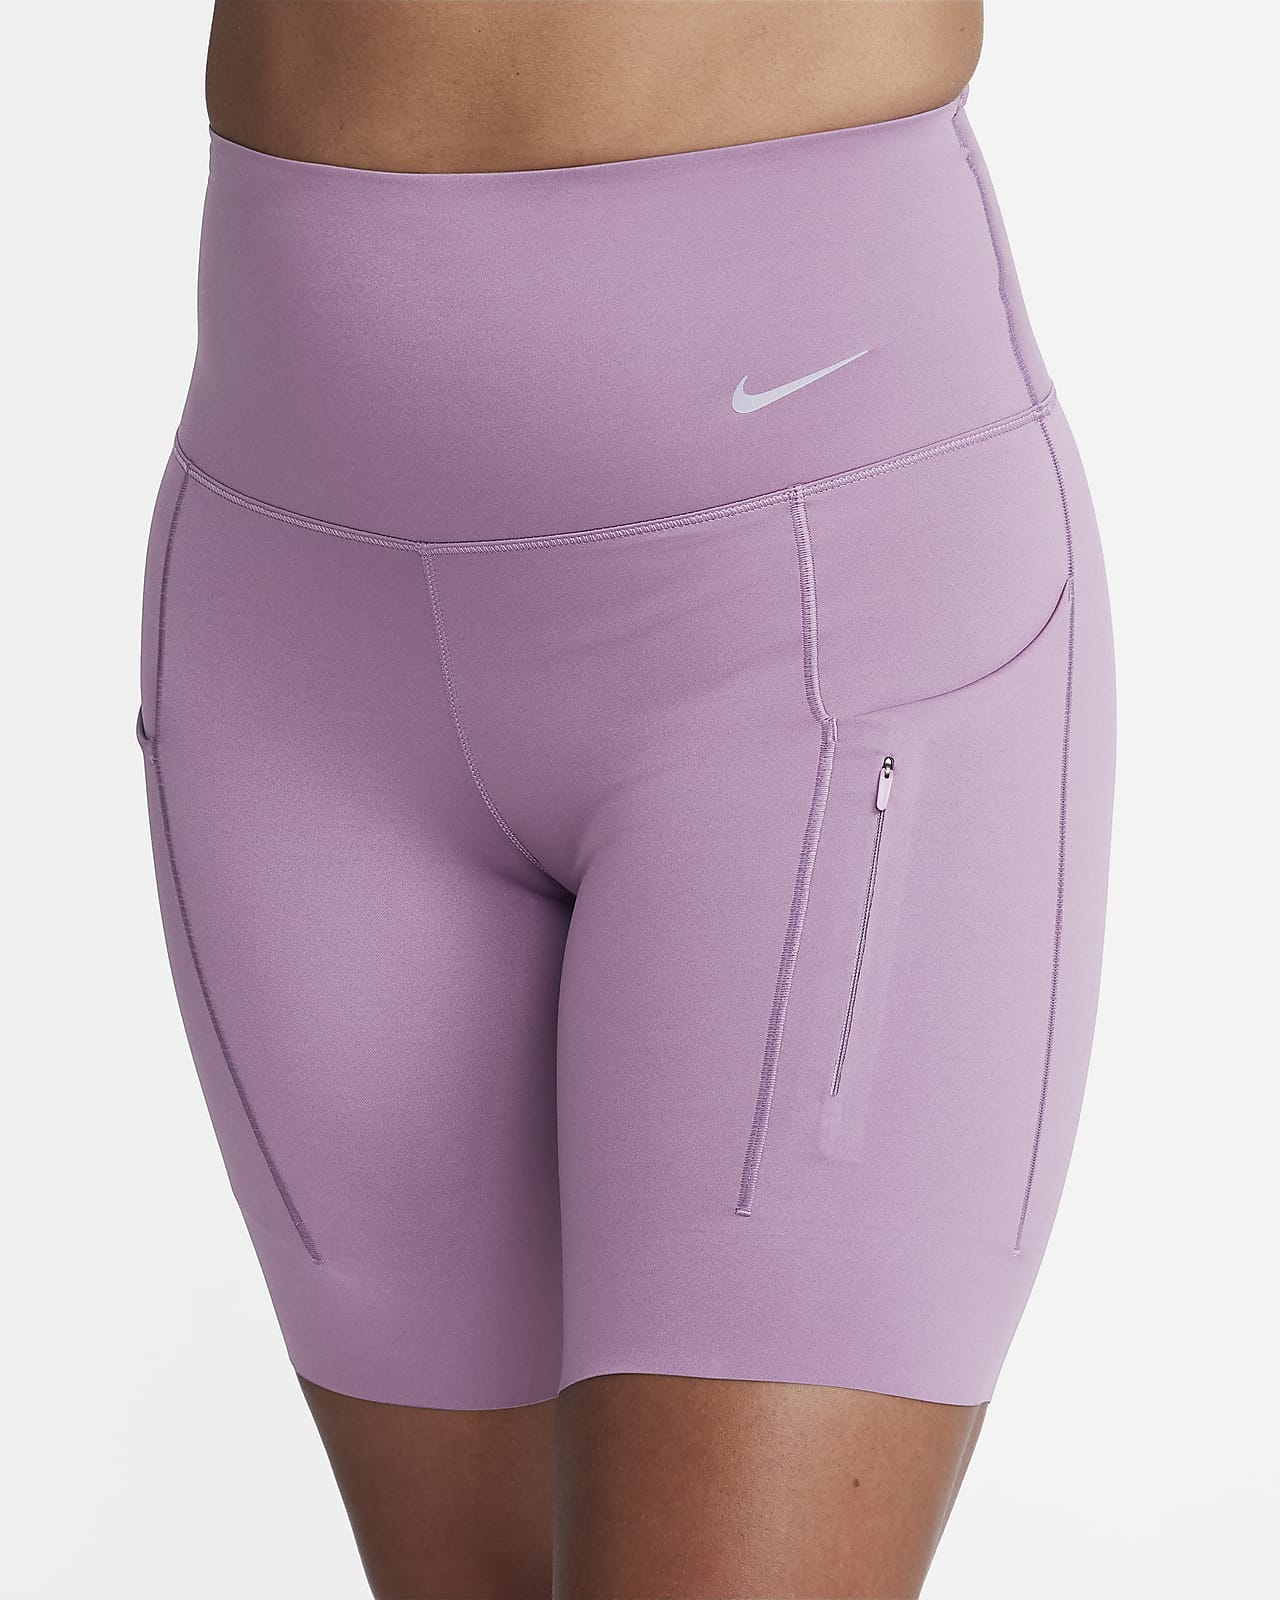 Nike Go Women's High-Waisted 8" Biker Shorts with Pockets. Nike .com